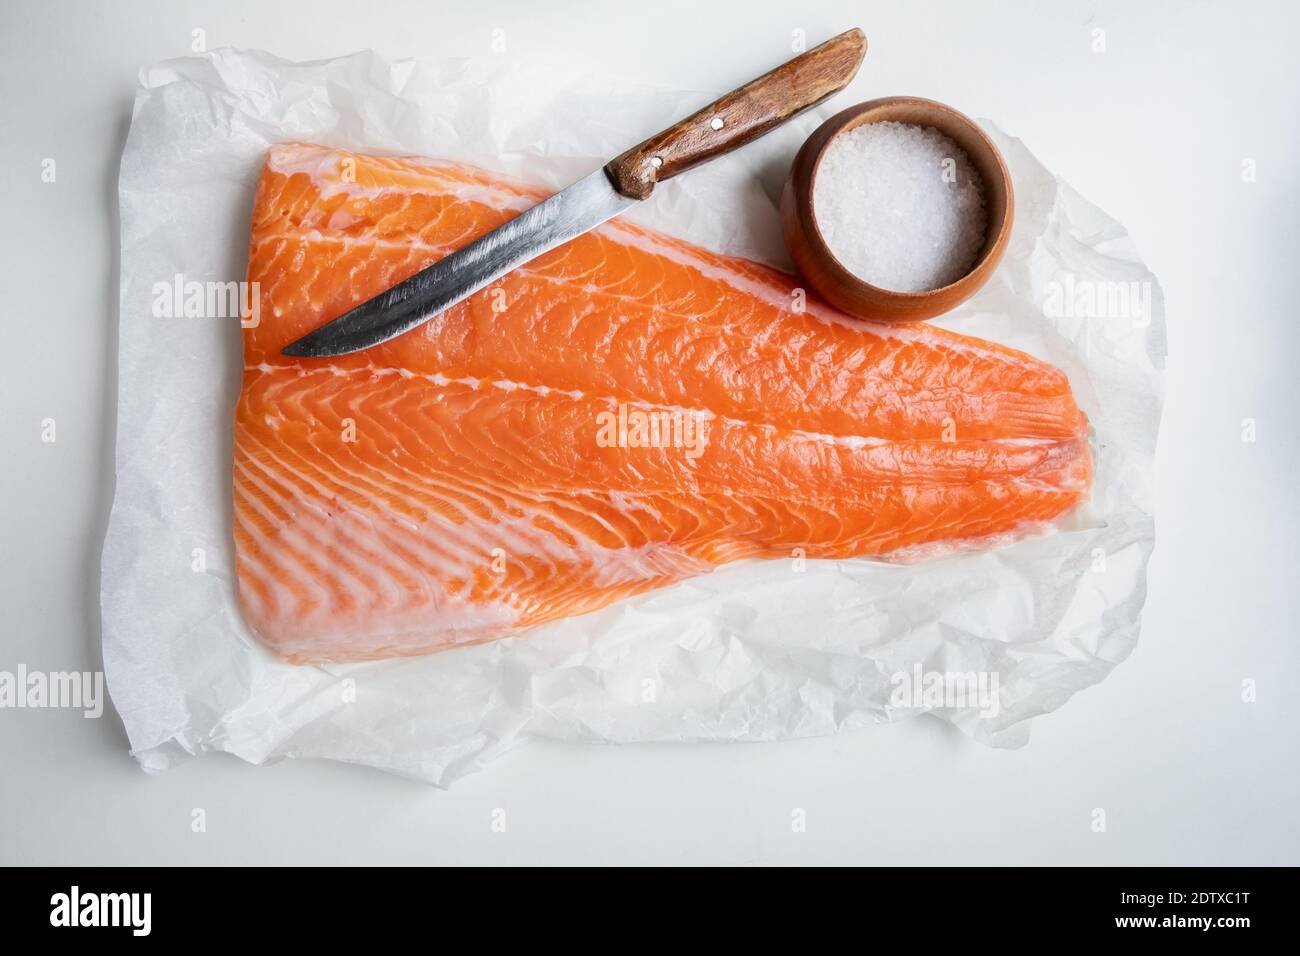 Filetto di salmone su tavola di legno con coltello e sale. Fotografia alimentare Foto Stock